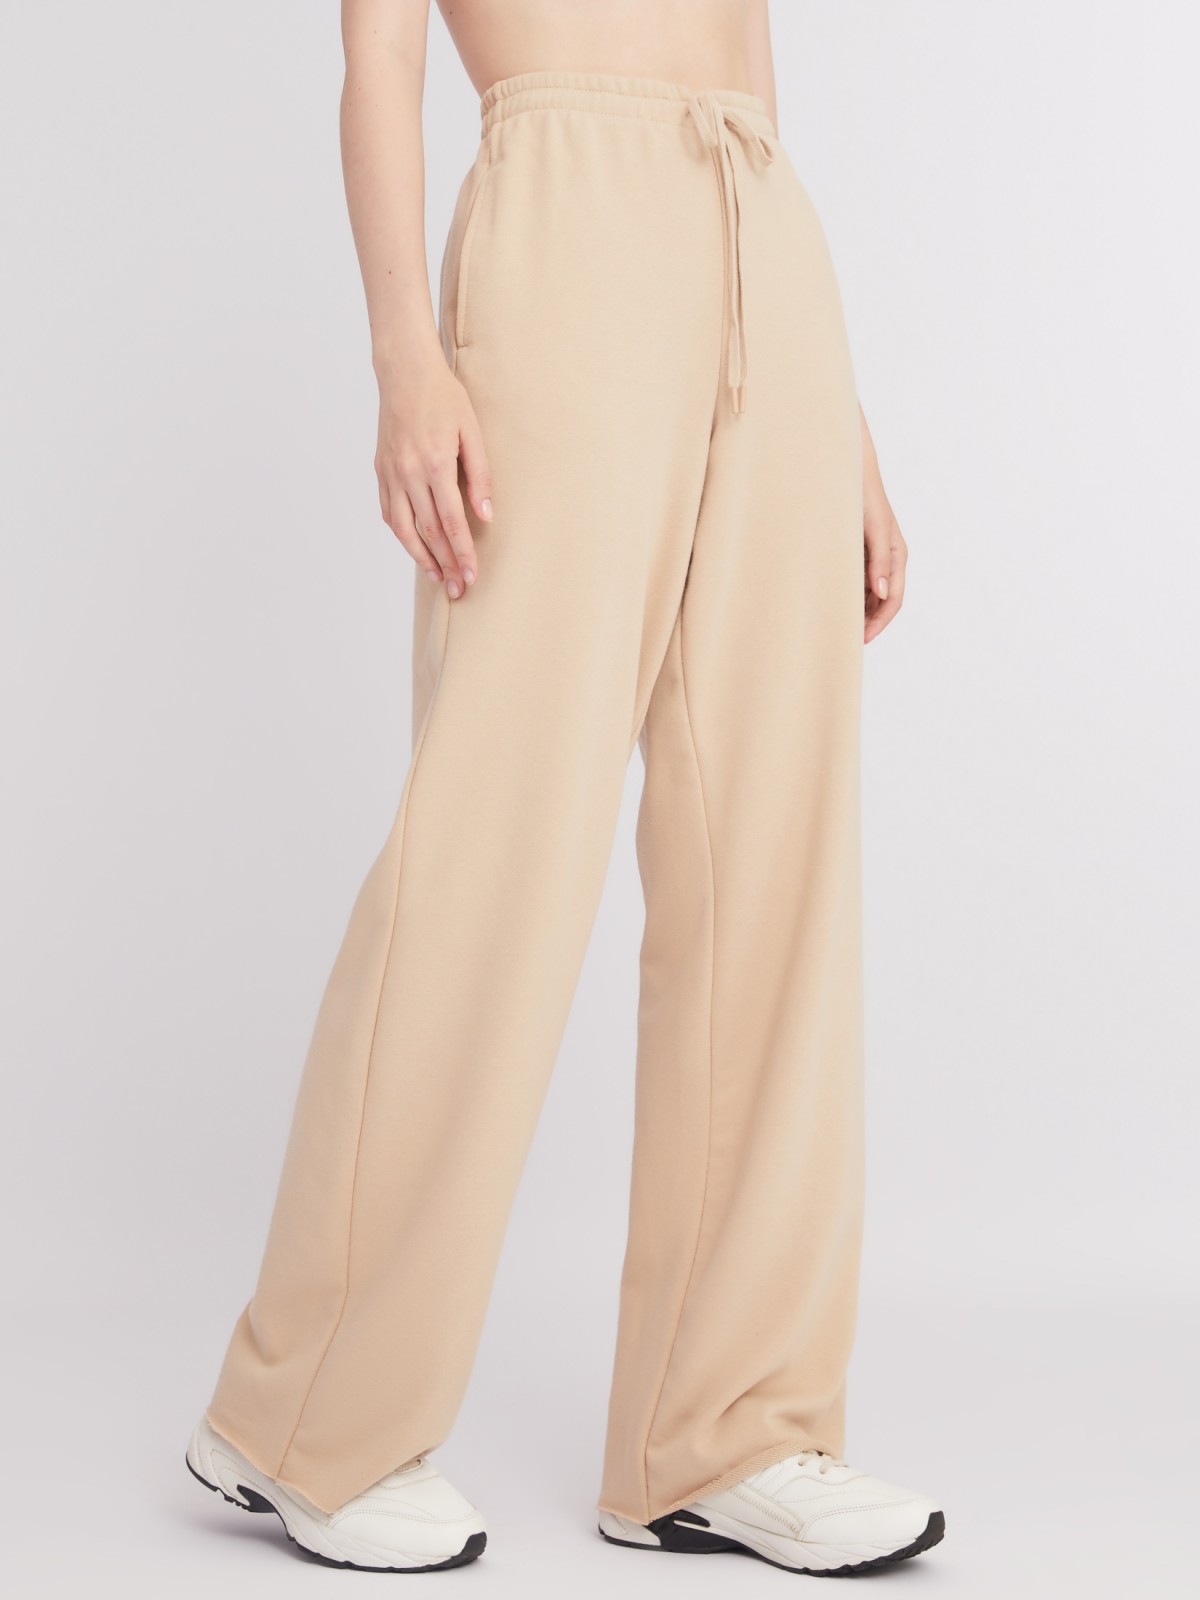 Трикотажные брюки прямого силуэта с поясом на резинке zolla 22332762L013, цвет бежевый, размер XS - фото 5